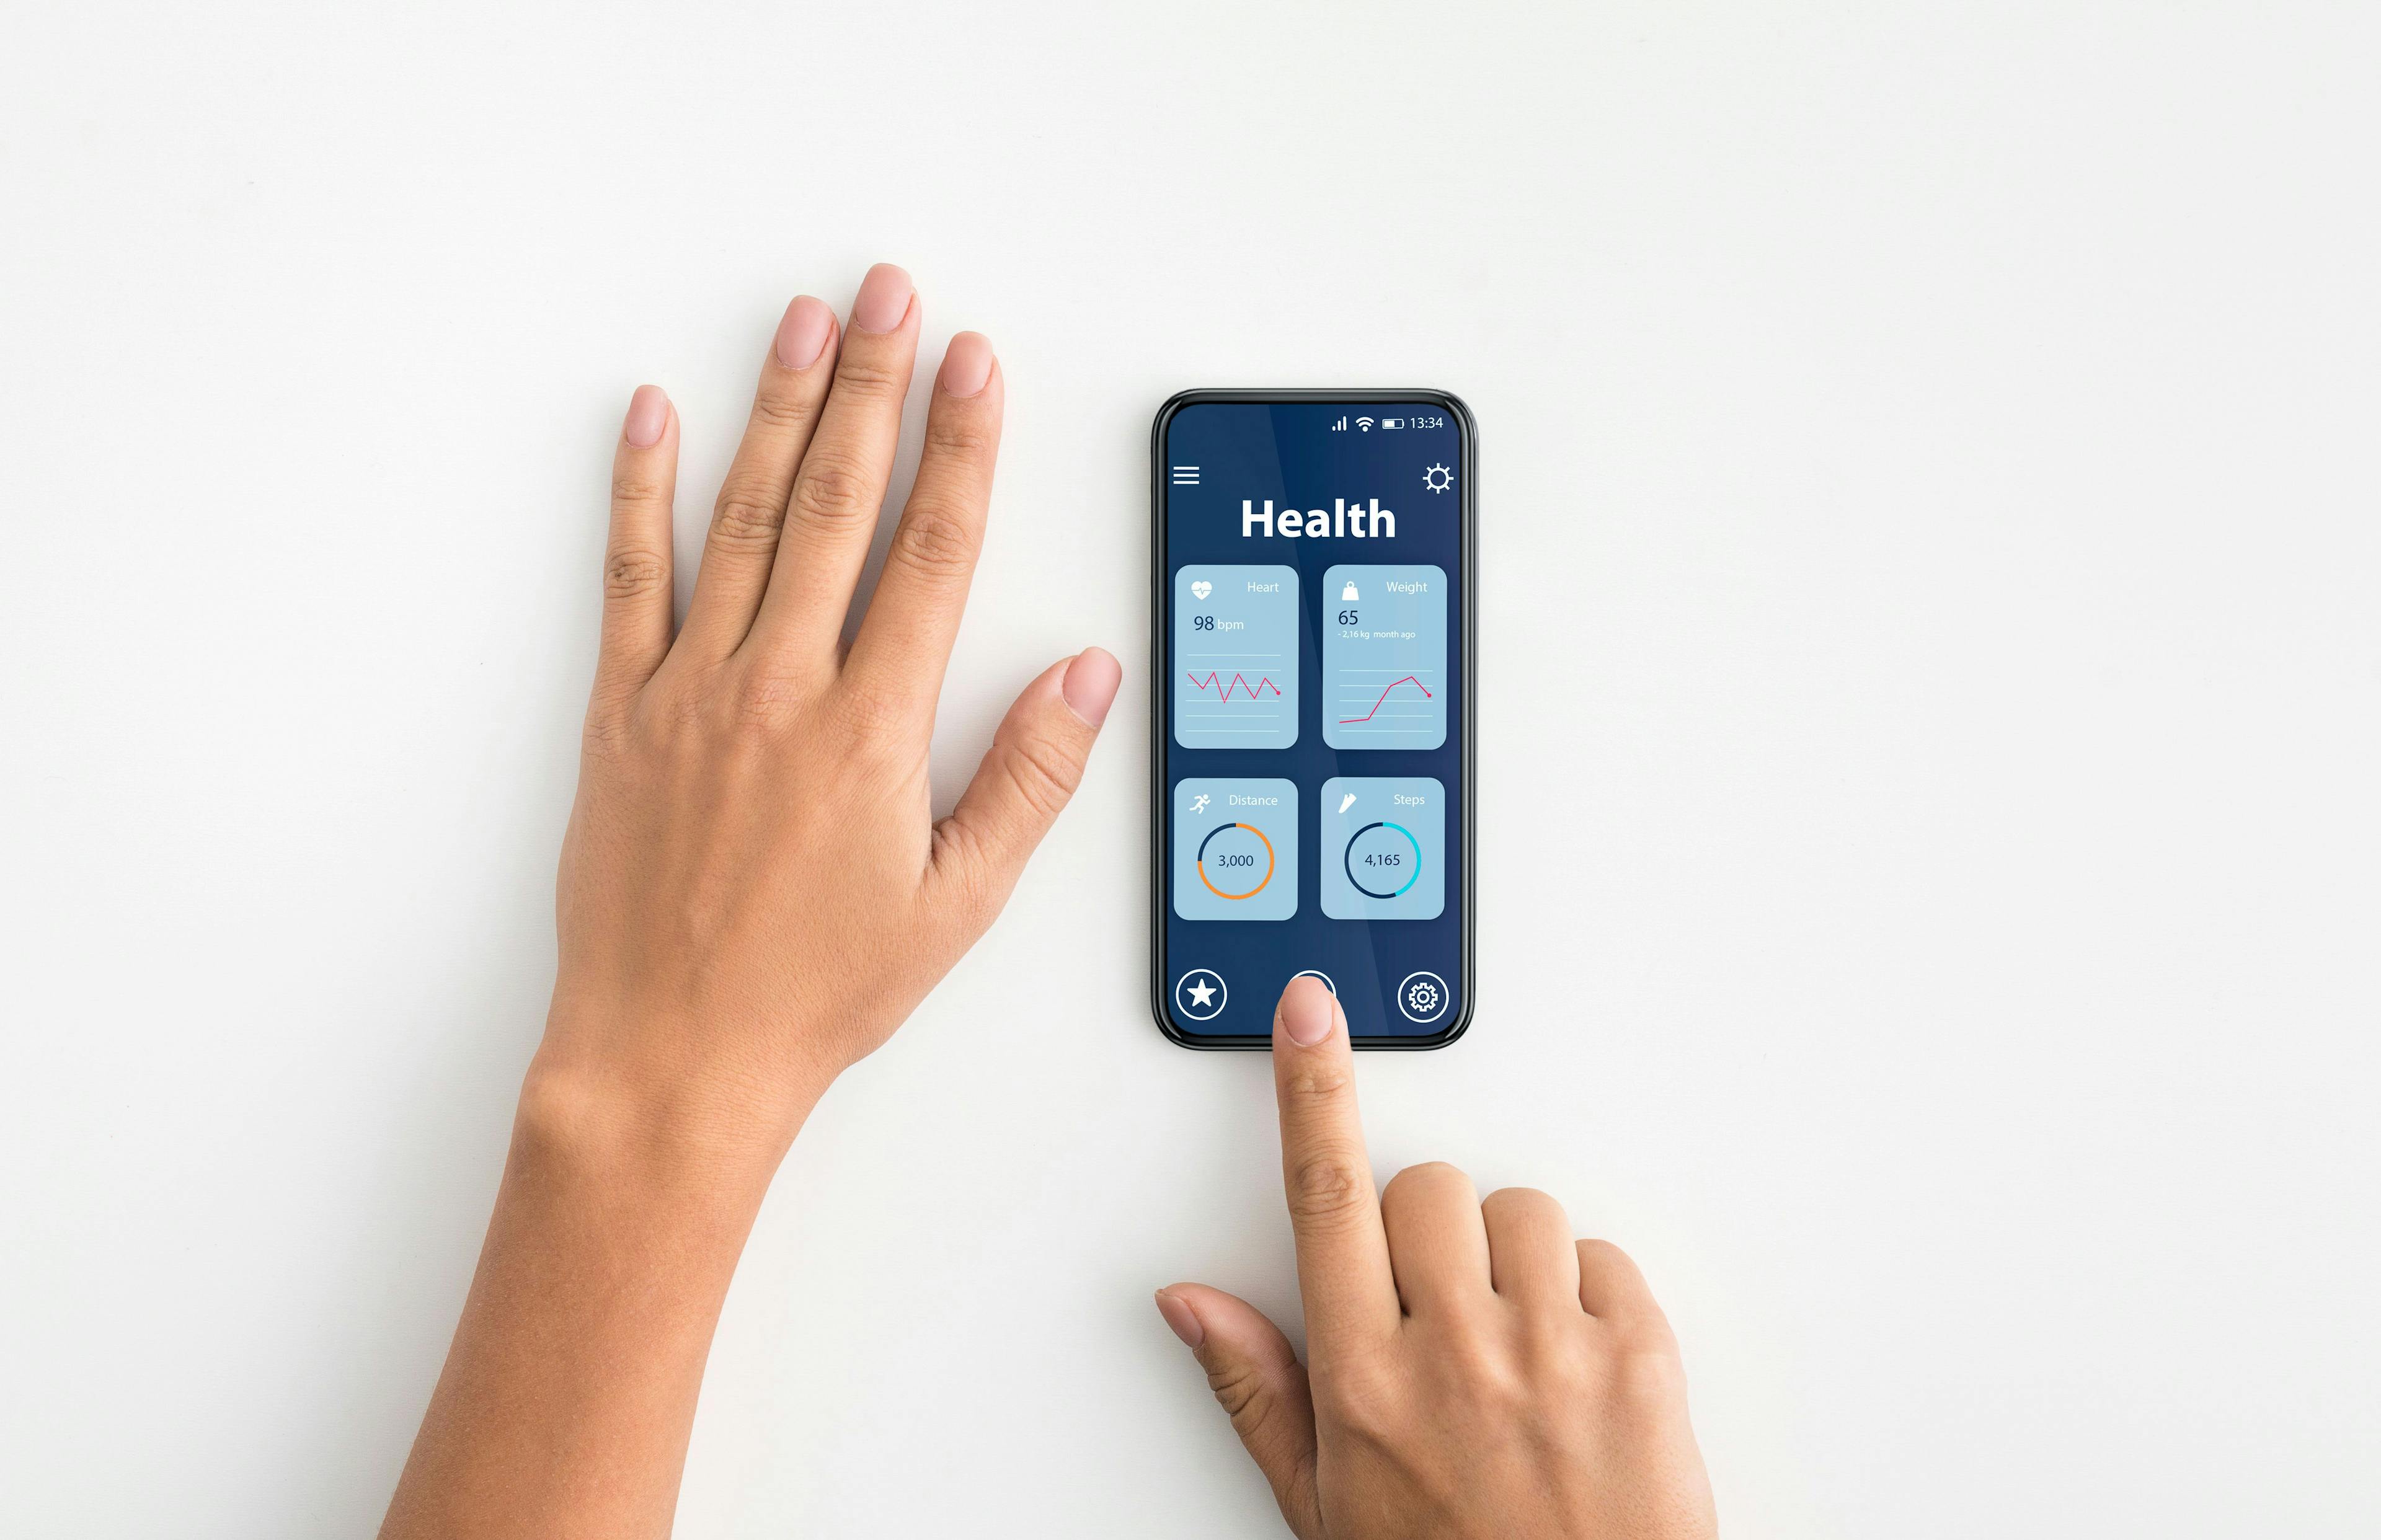 Dario Diabetes App Reduces Healthcare Utilization by 9.3%